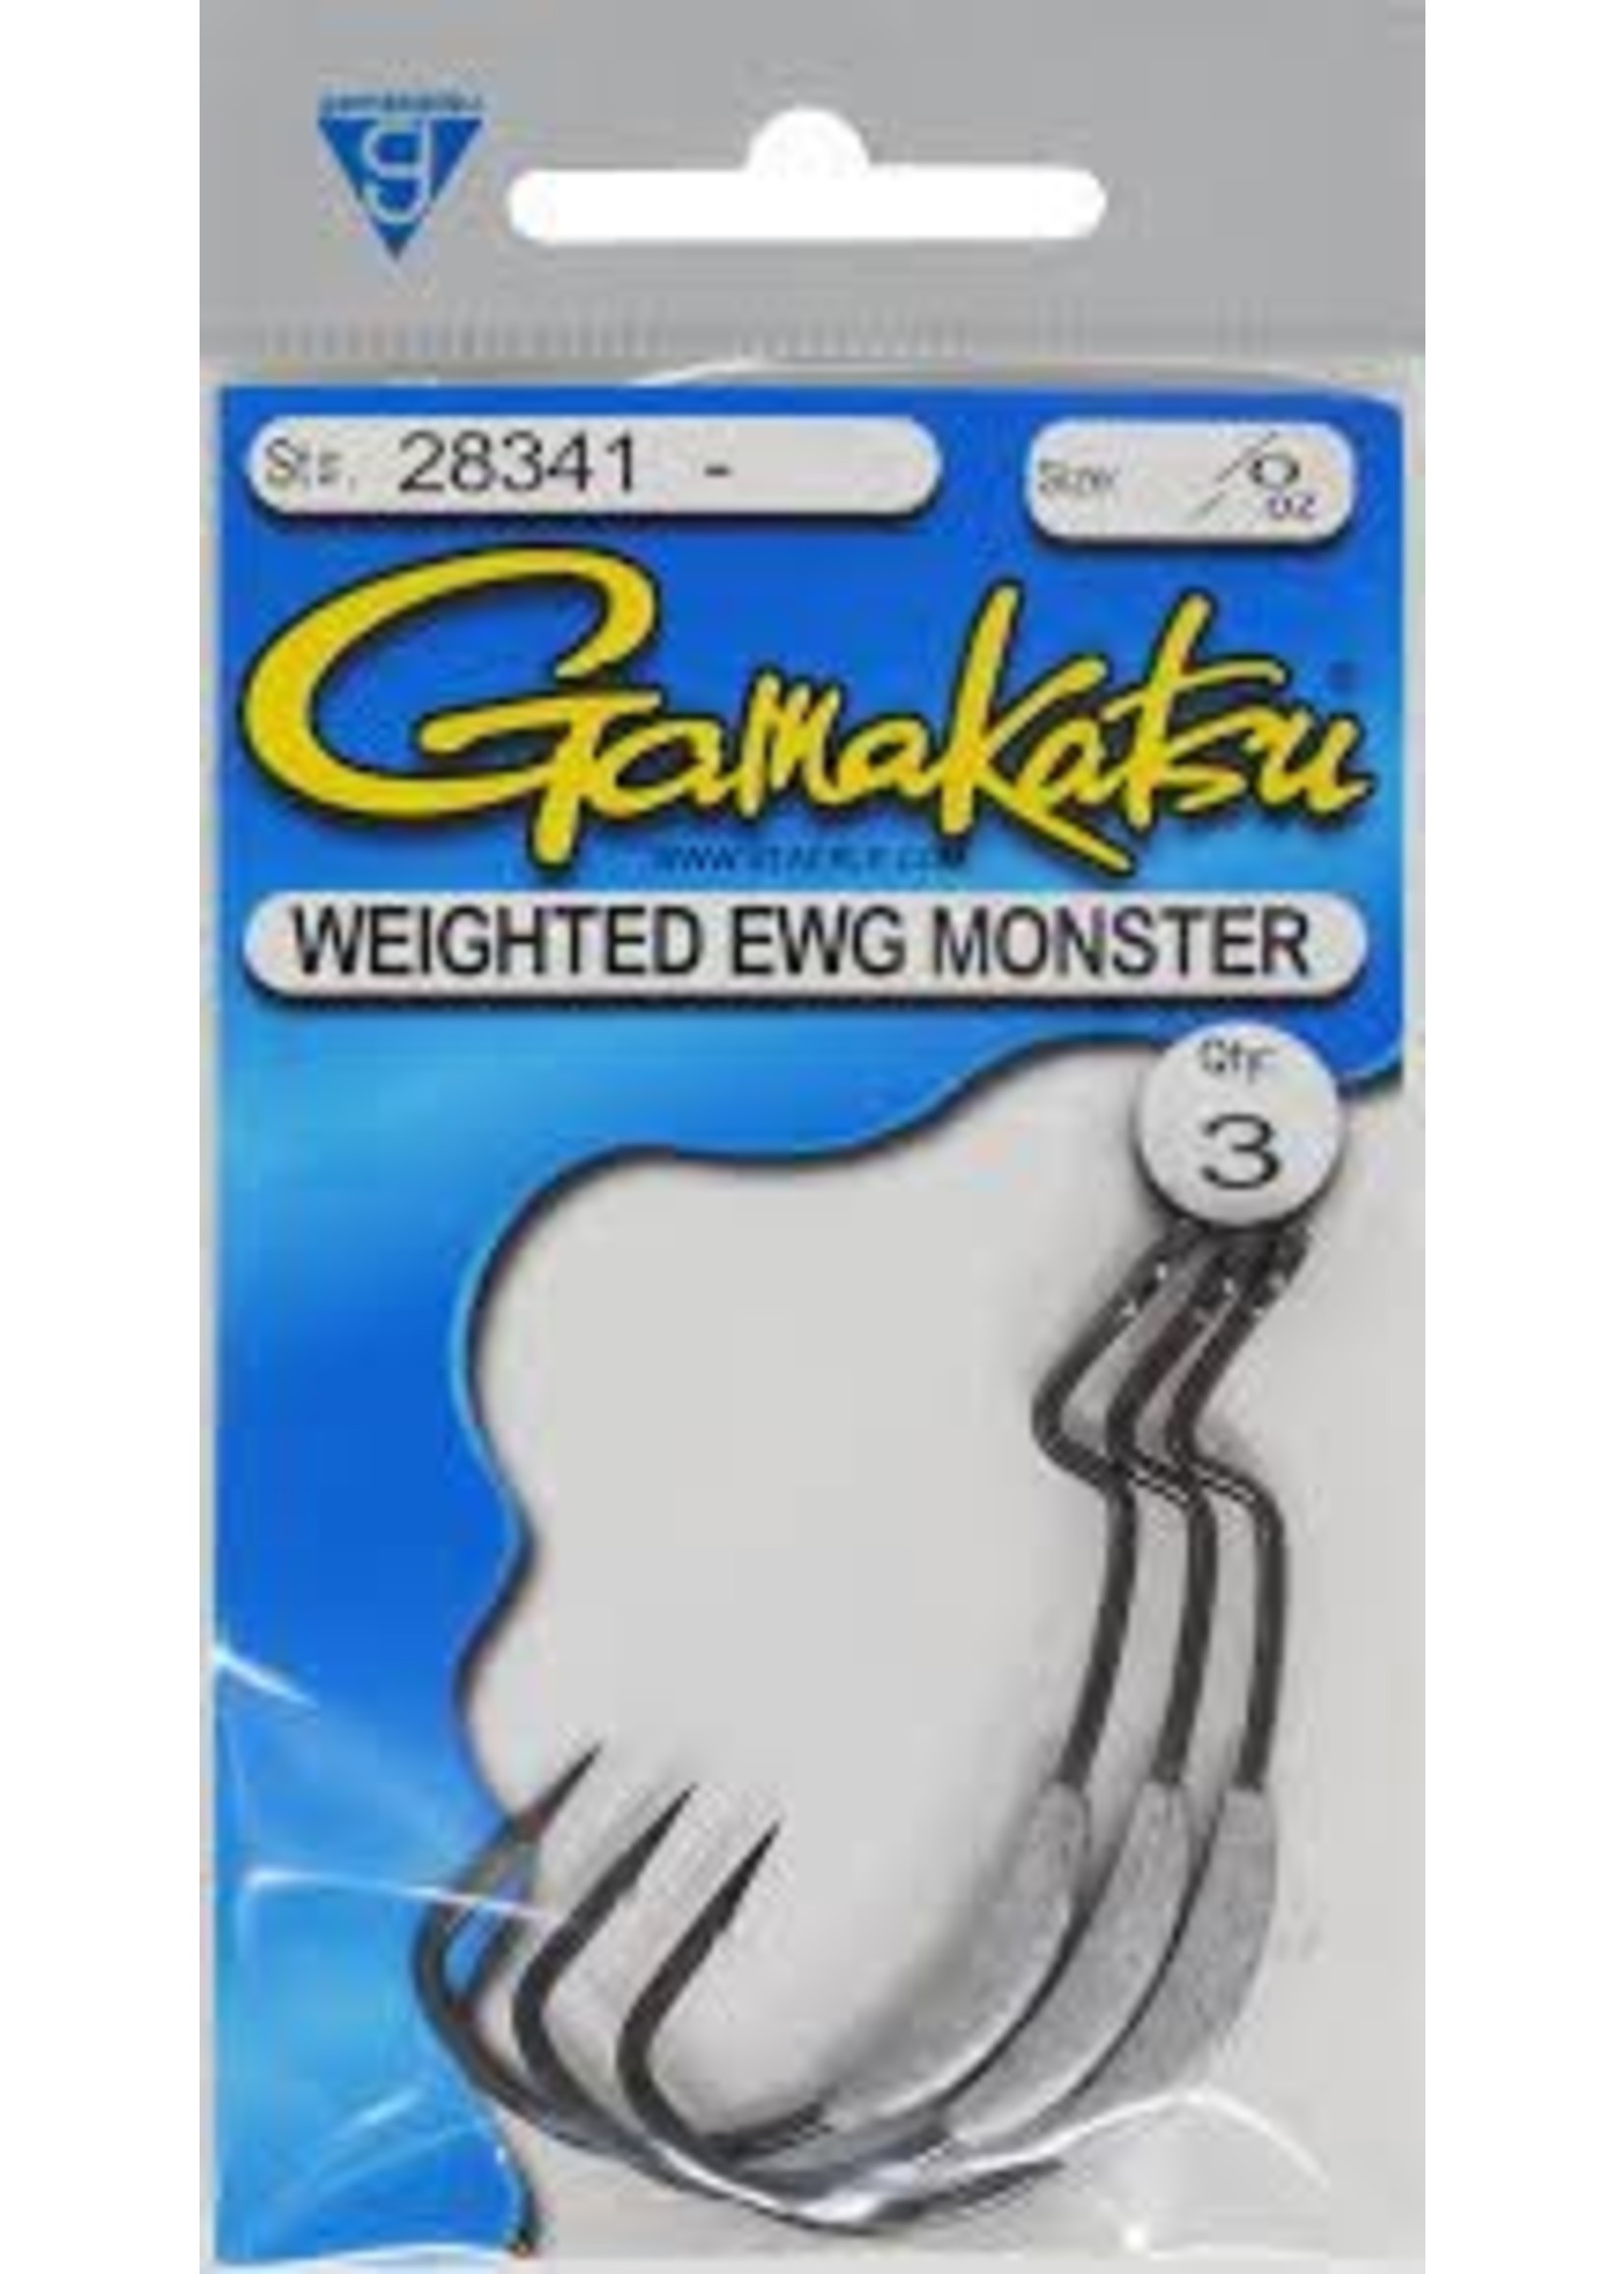 Gamakatsu Gamakatsu EWG Monster Weighted